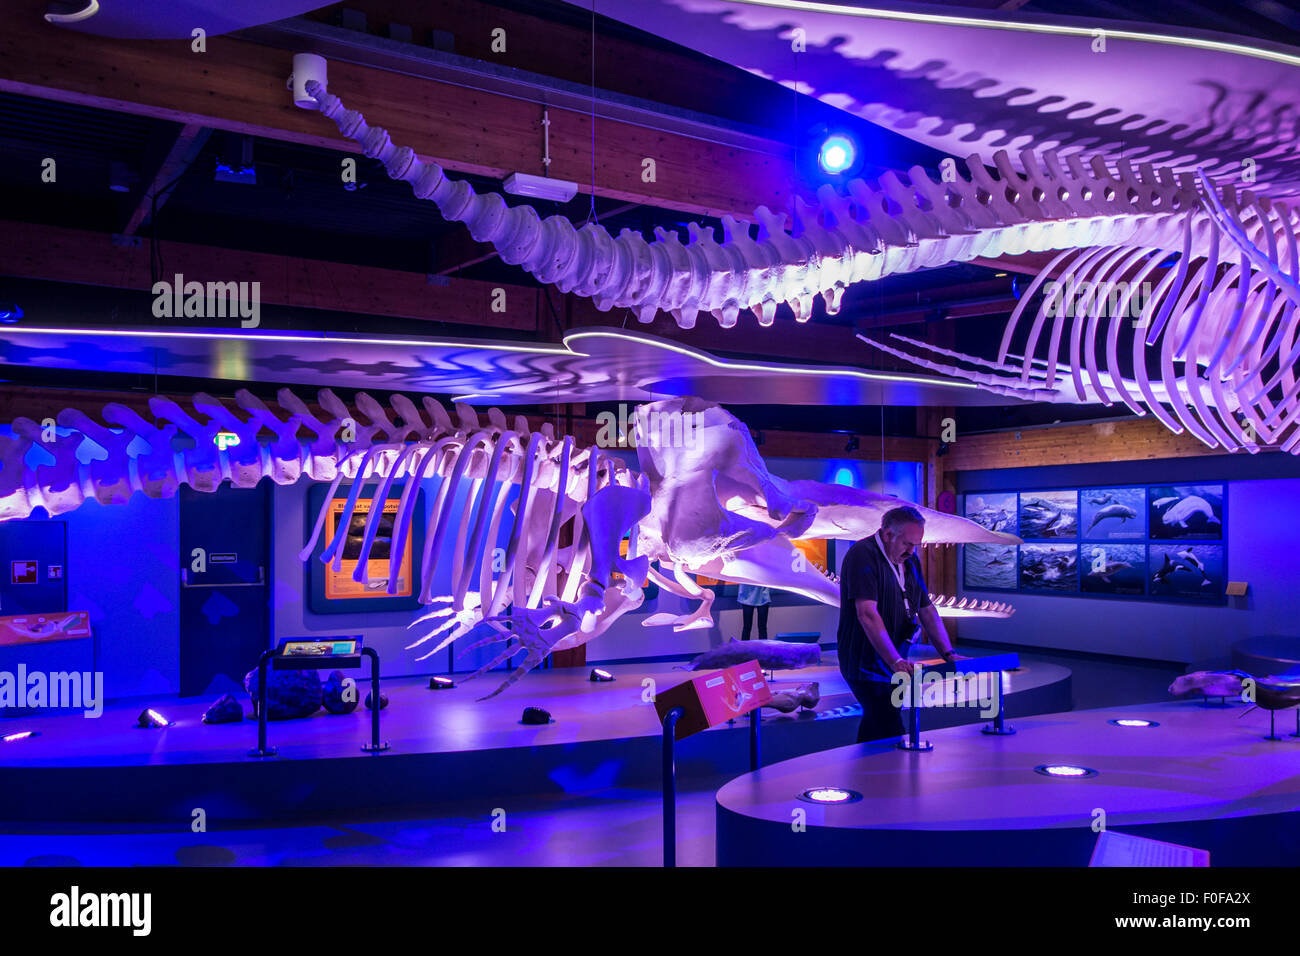 Exposition de squelettes de baleines à l'Ecomare, centre de la nature et de la vie marine sur Texel, Pays-Bas Banque D'Images